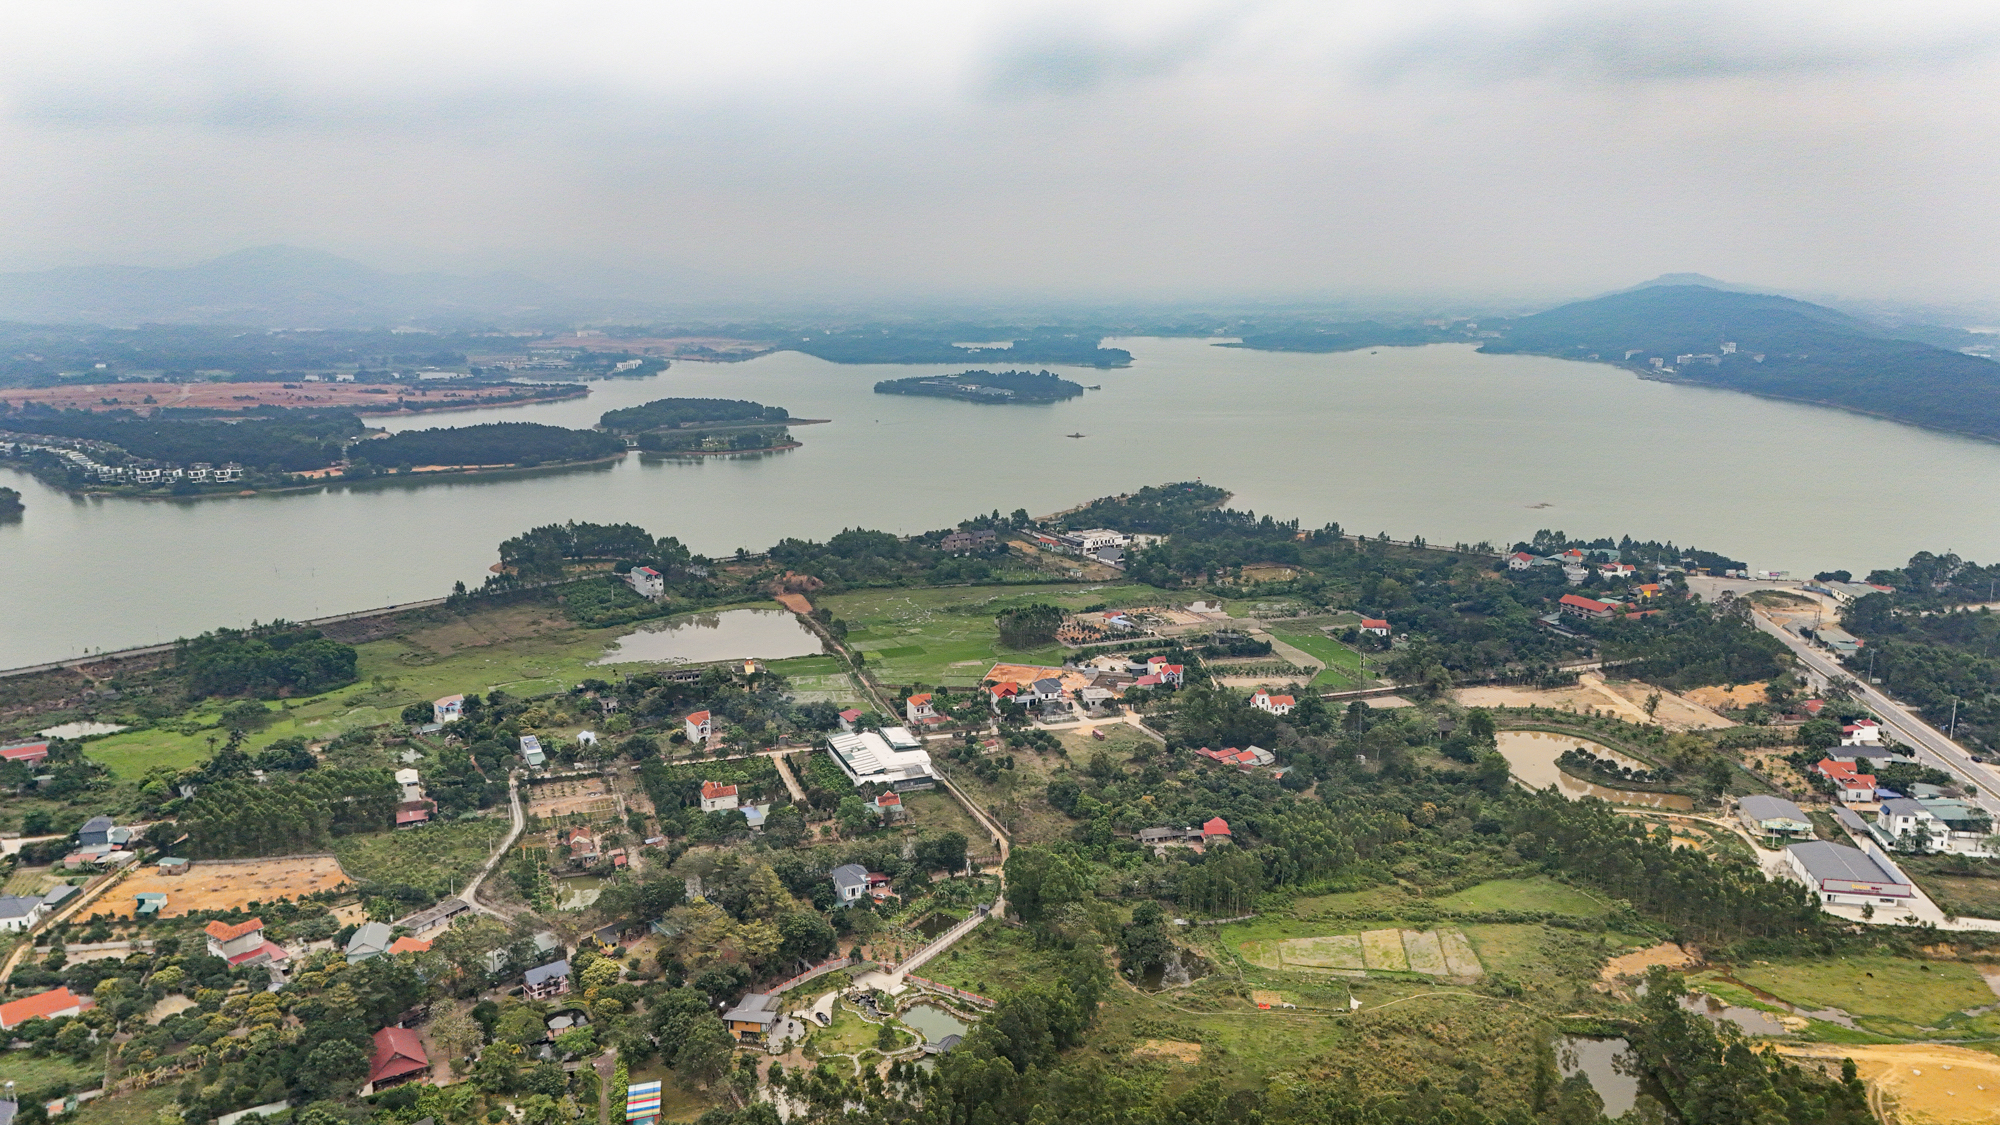 1.000 người đến vùng đất hoang đào cái hồ rộng bằng quận Hoàn Kiếm, 60 năm sau trở thành thiên đường nghỉ dưỡng ngay gần Hà Nội- Ảnh 1.